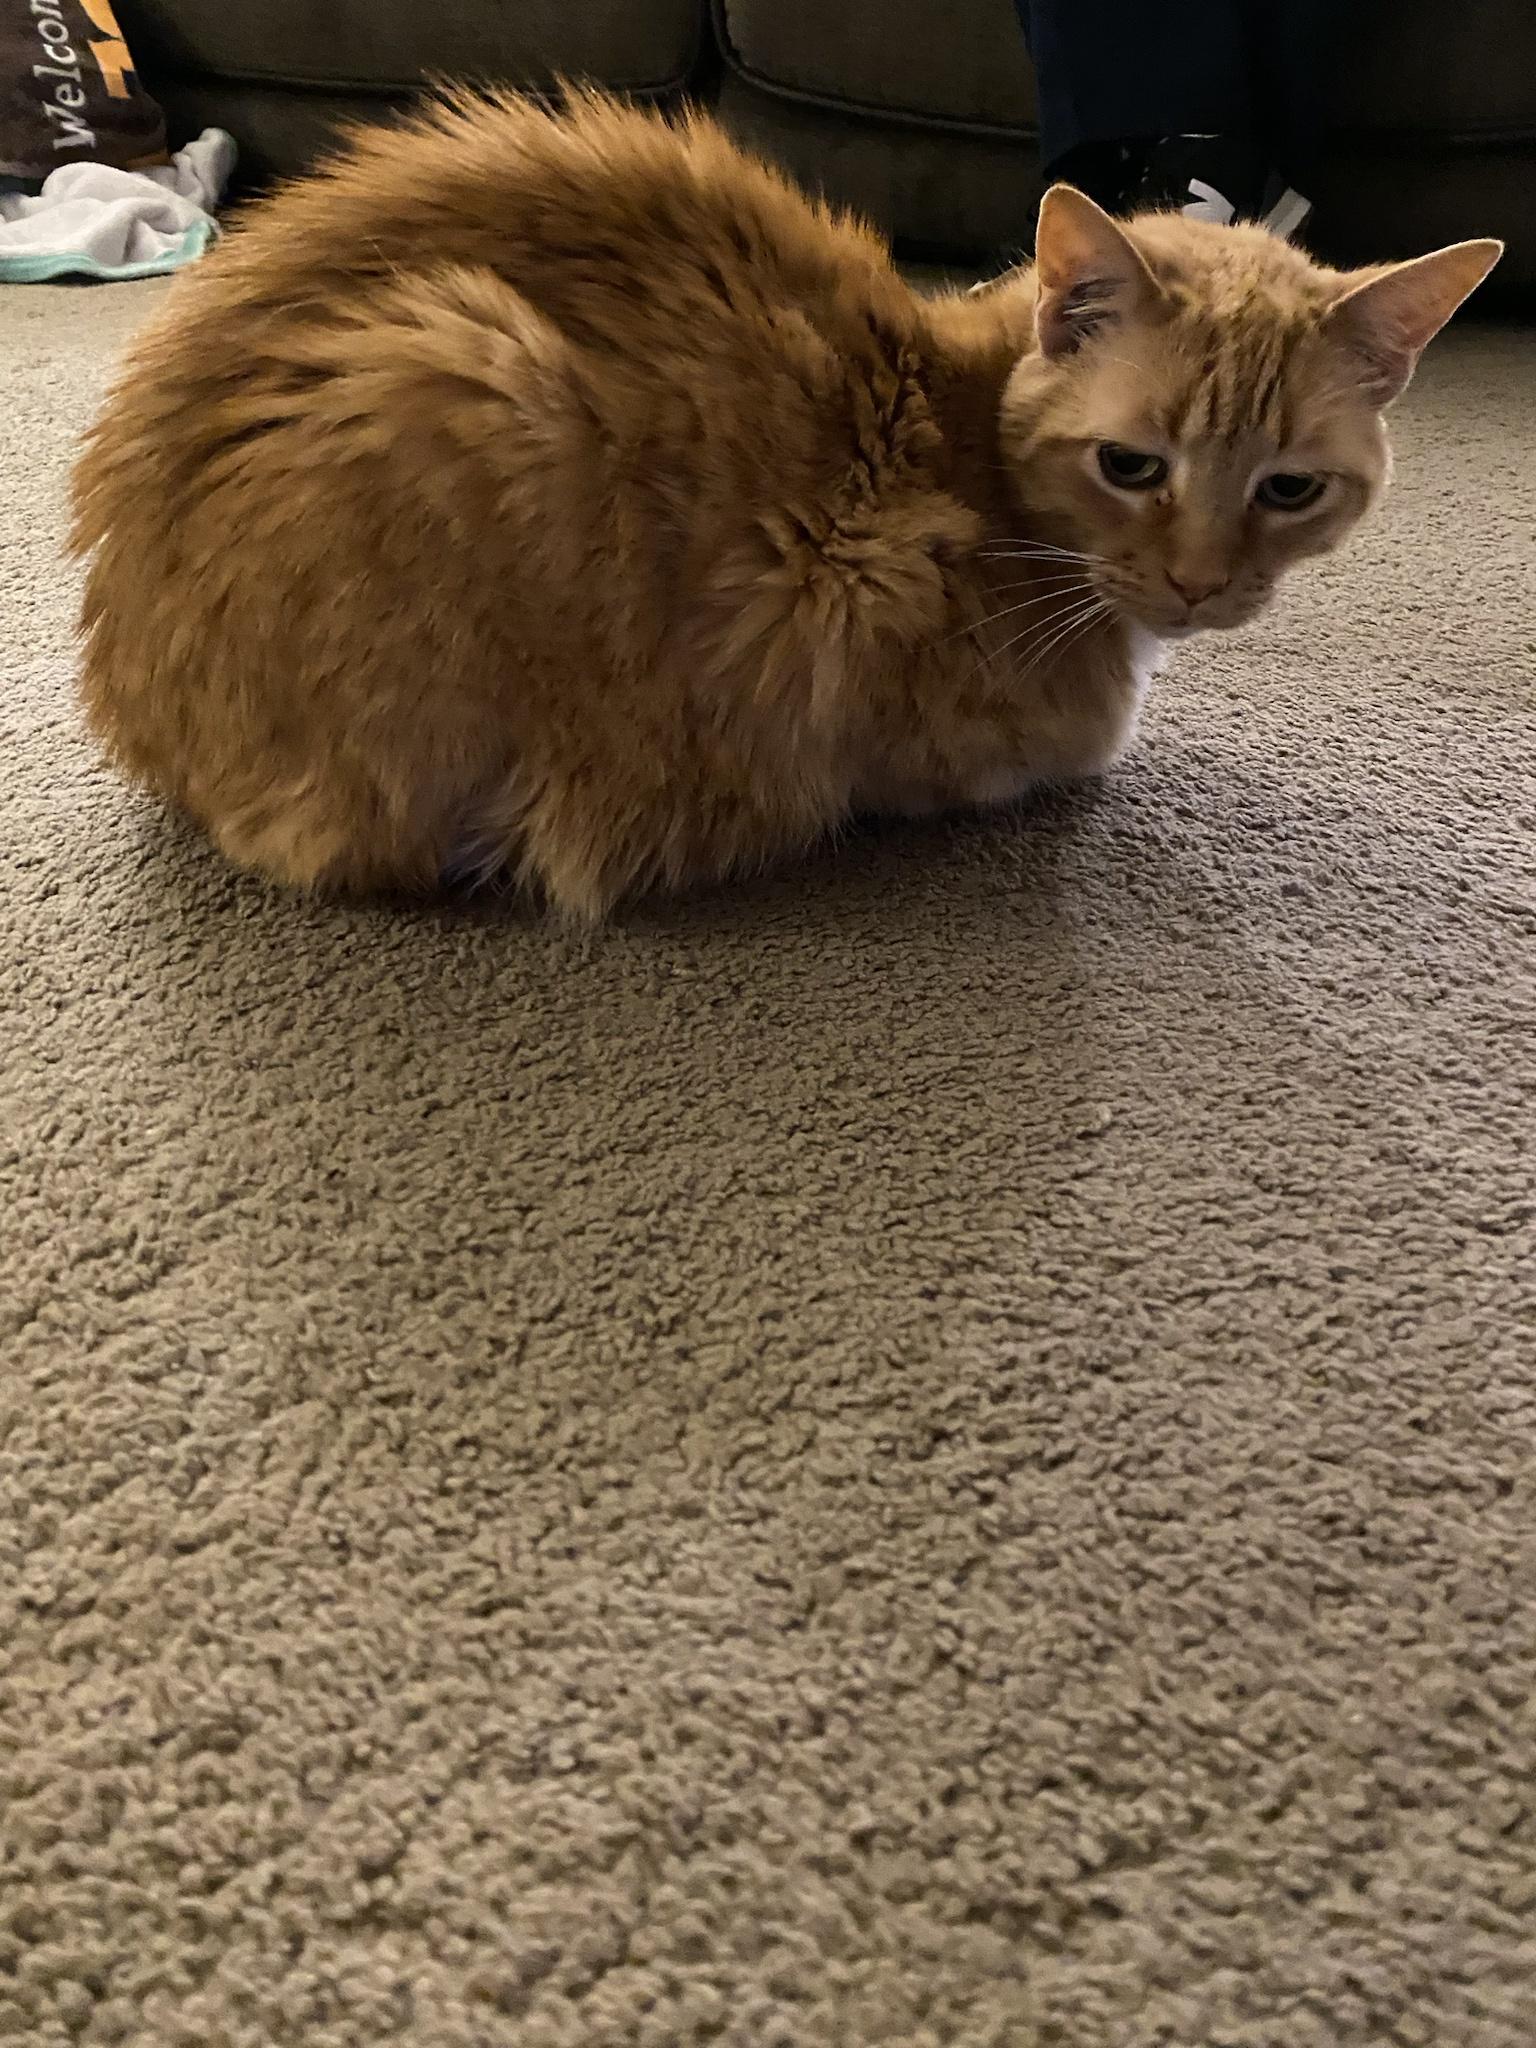 Cat loaf